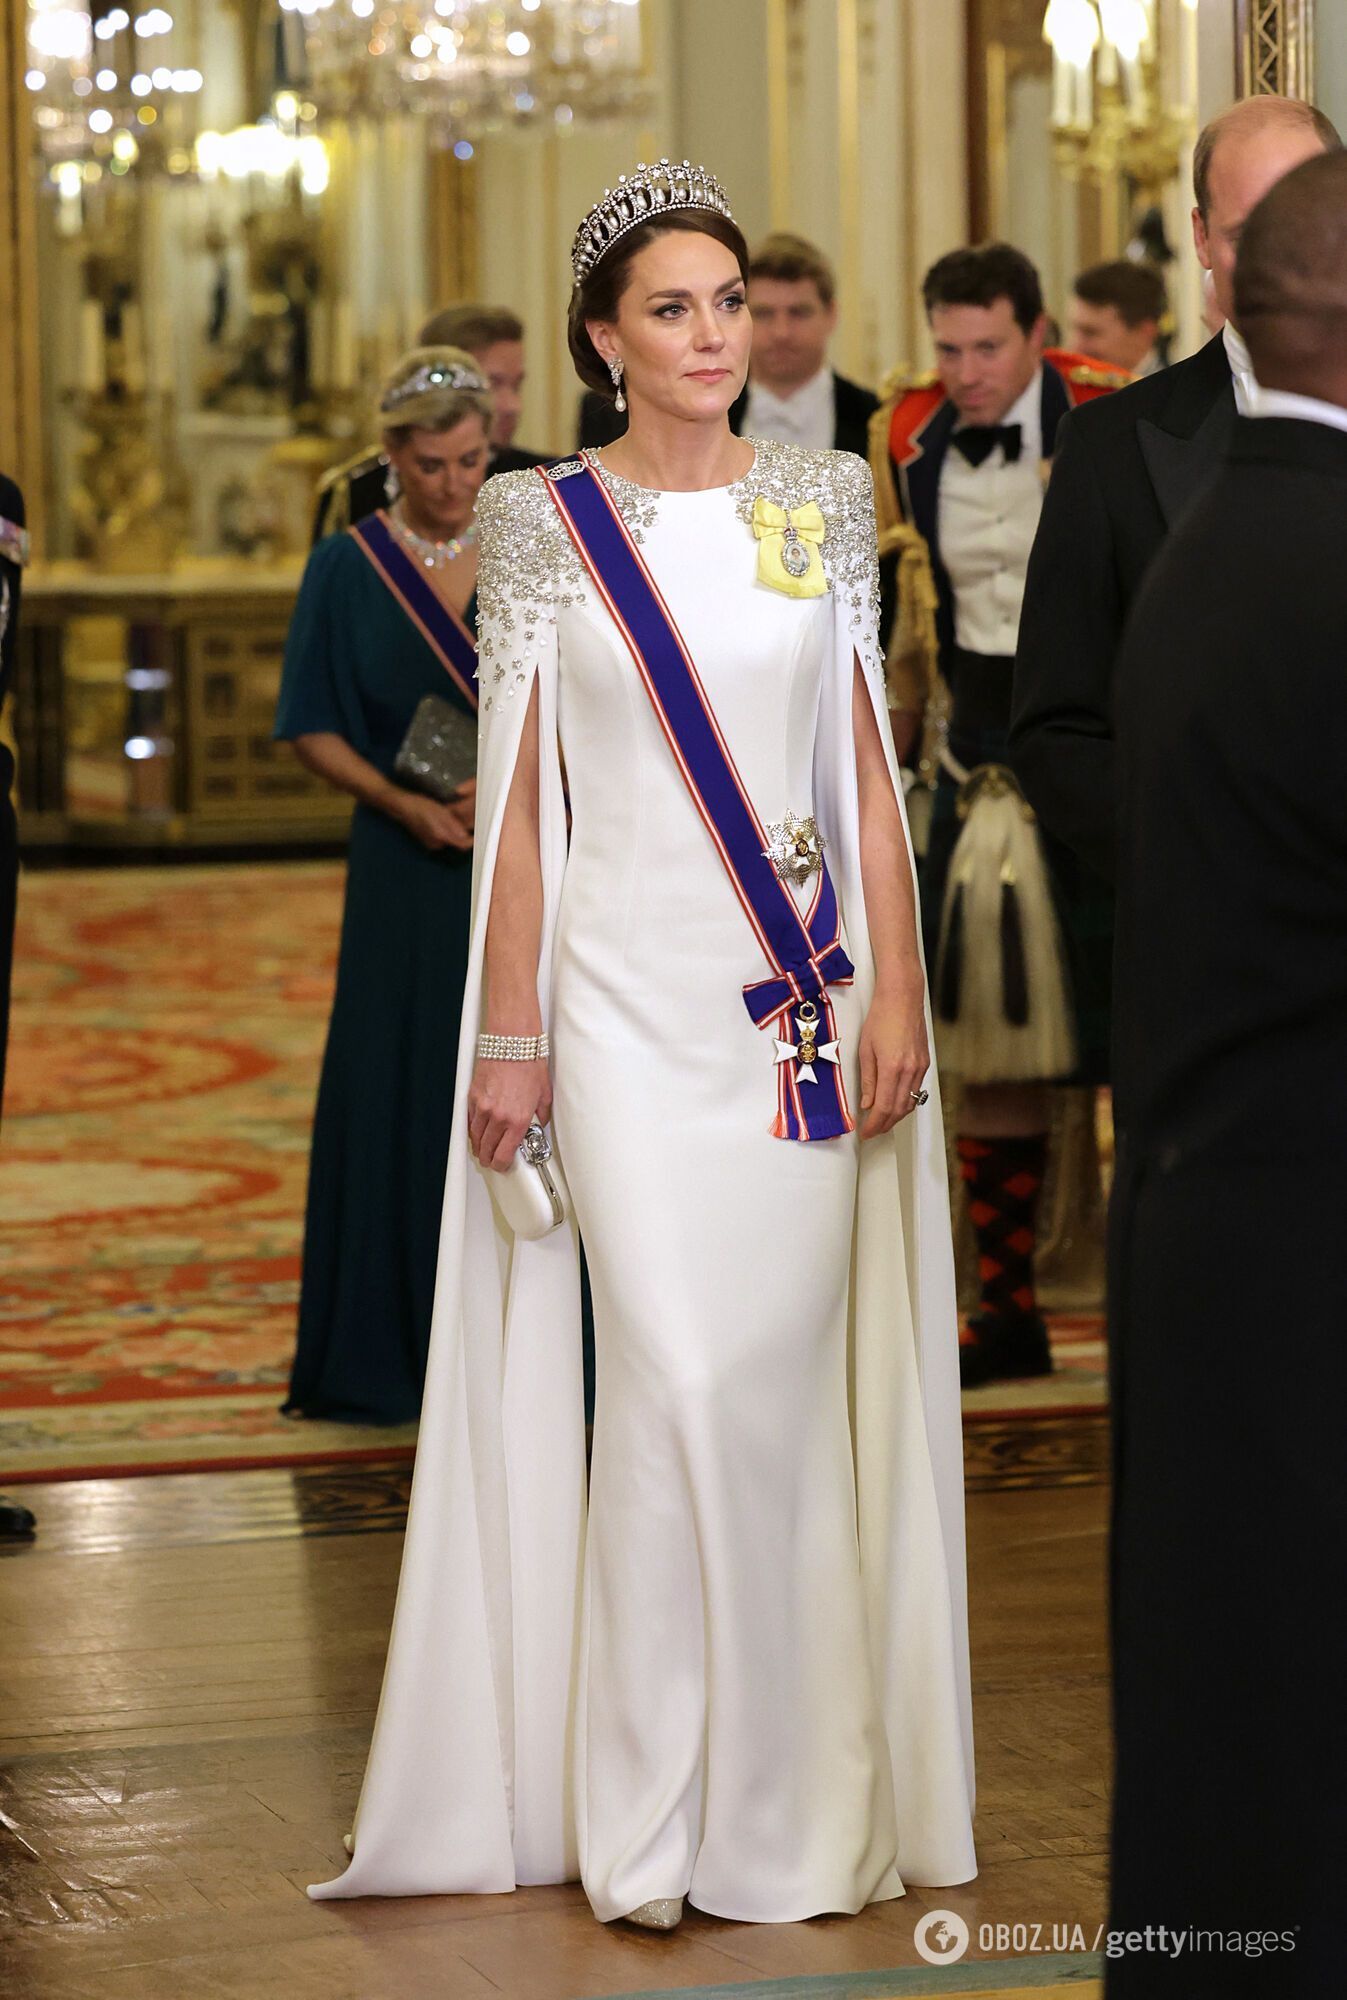 Образ Кейт Міддлтон порівняли з вбранням принцеси Діани 1989 року: на них однакові прикраси та схожі сукні